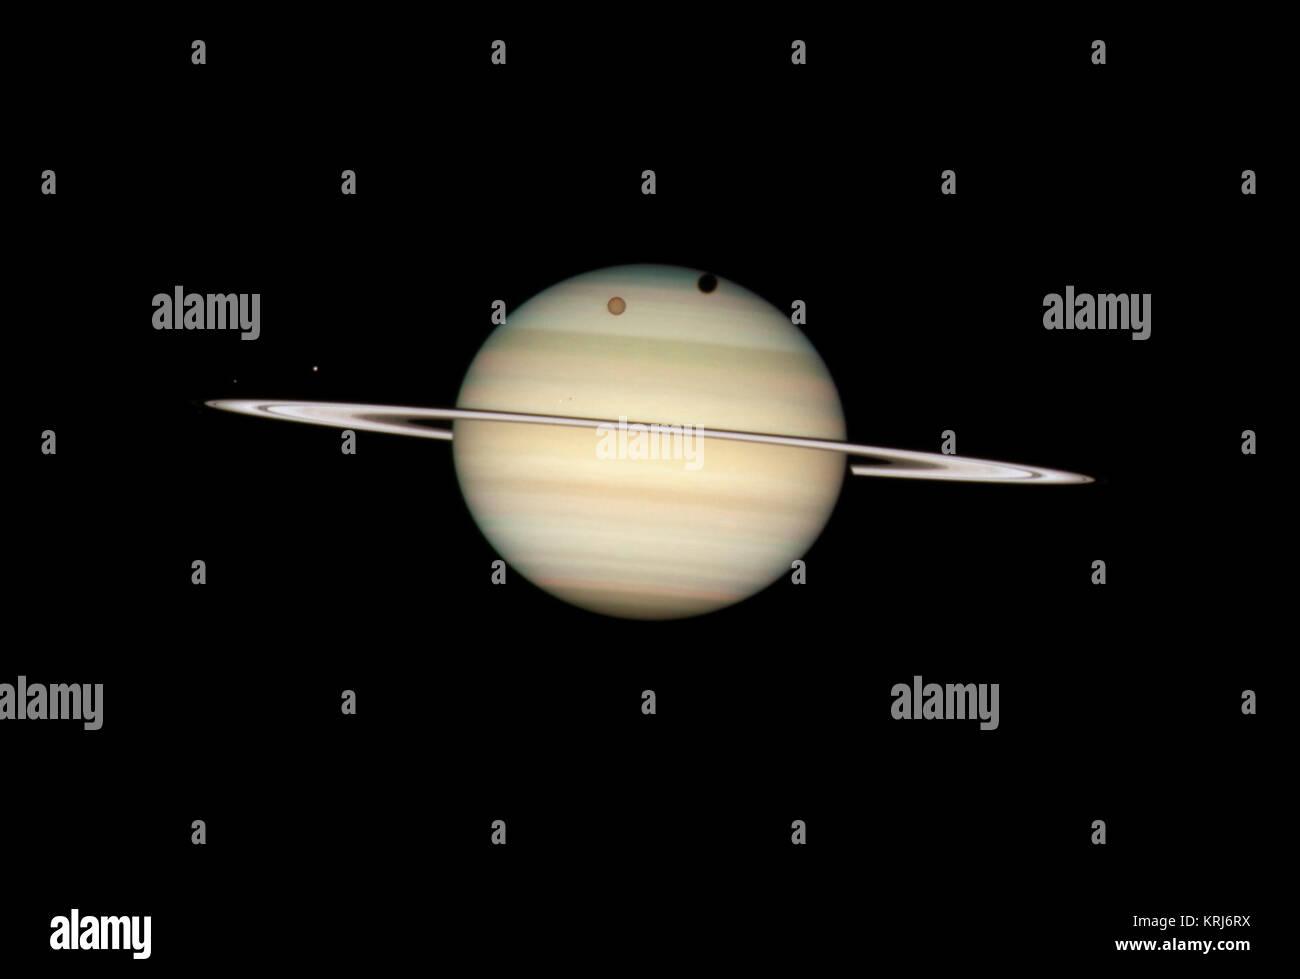 Vierbettzimmer Saturn mond Transit (Durch das Hubble Space Telescope erfasst) Stockfoto